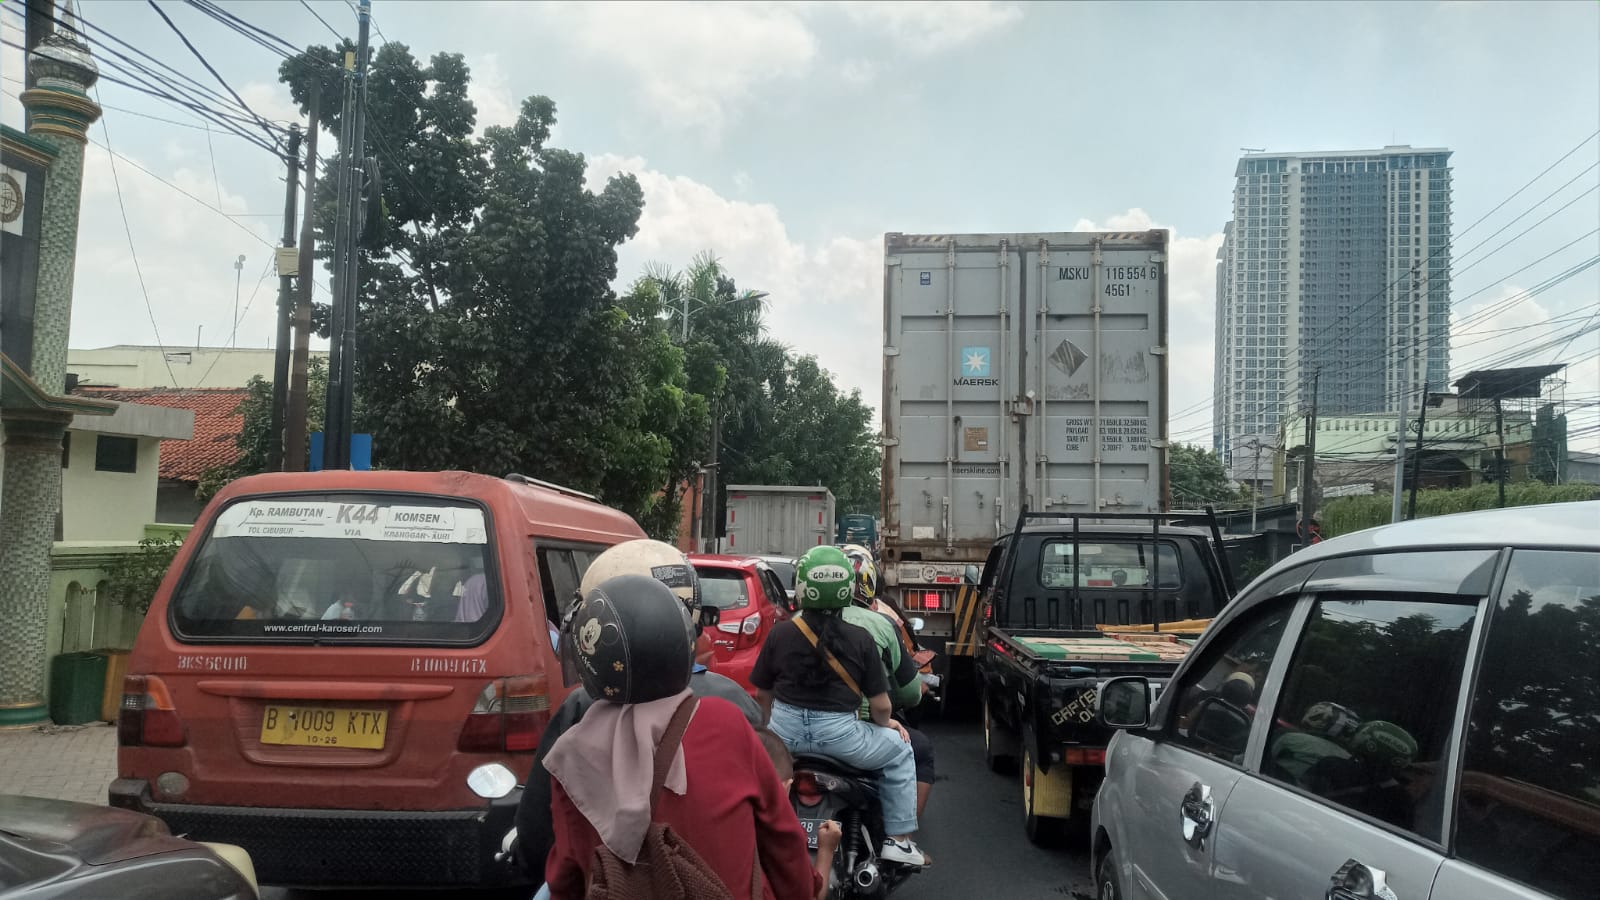 Imbas Aturan One Way Arah Jakarta di Tol, Seluruh Jalan Arteri Kota Bekasi Macet Parah